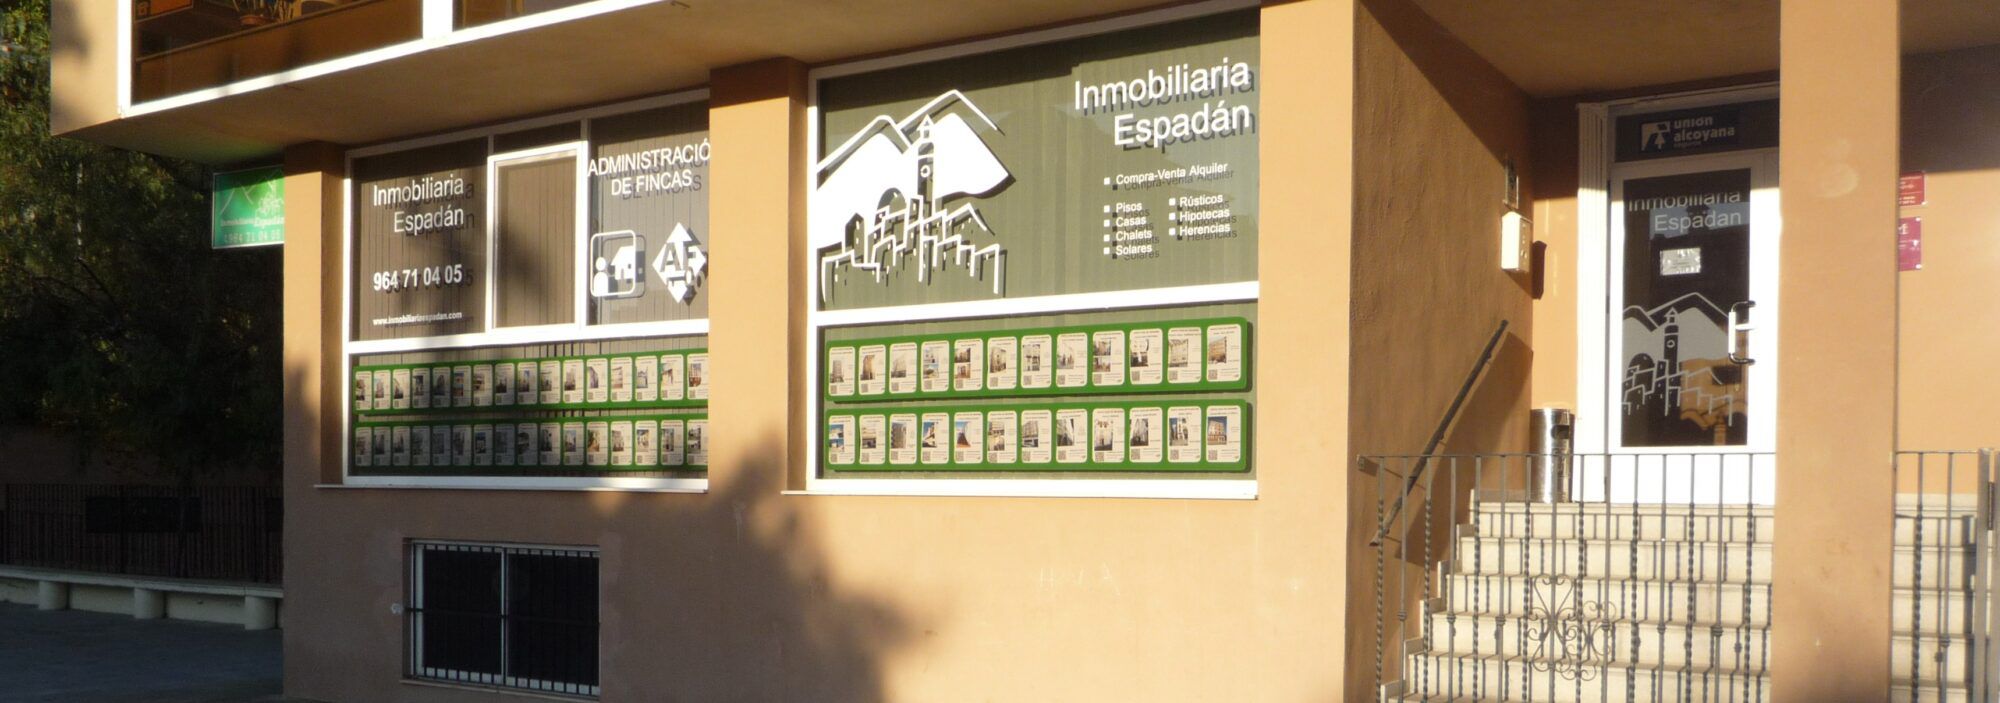 Inmobiliaria Espadán, servicios de confianza. INMOBILIARIA ESPADAN en Segorbe